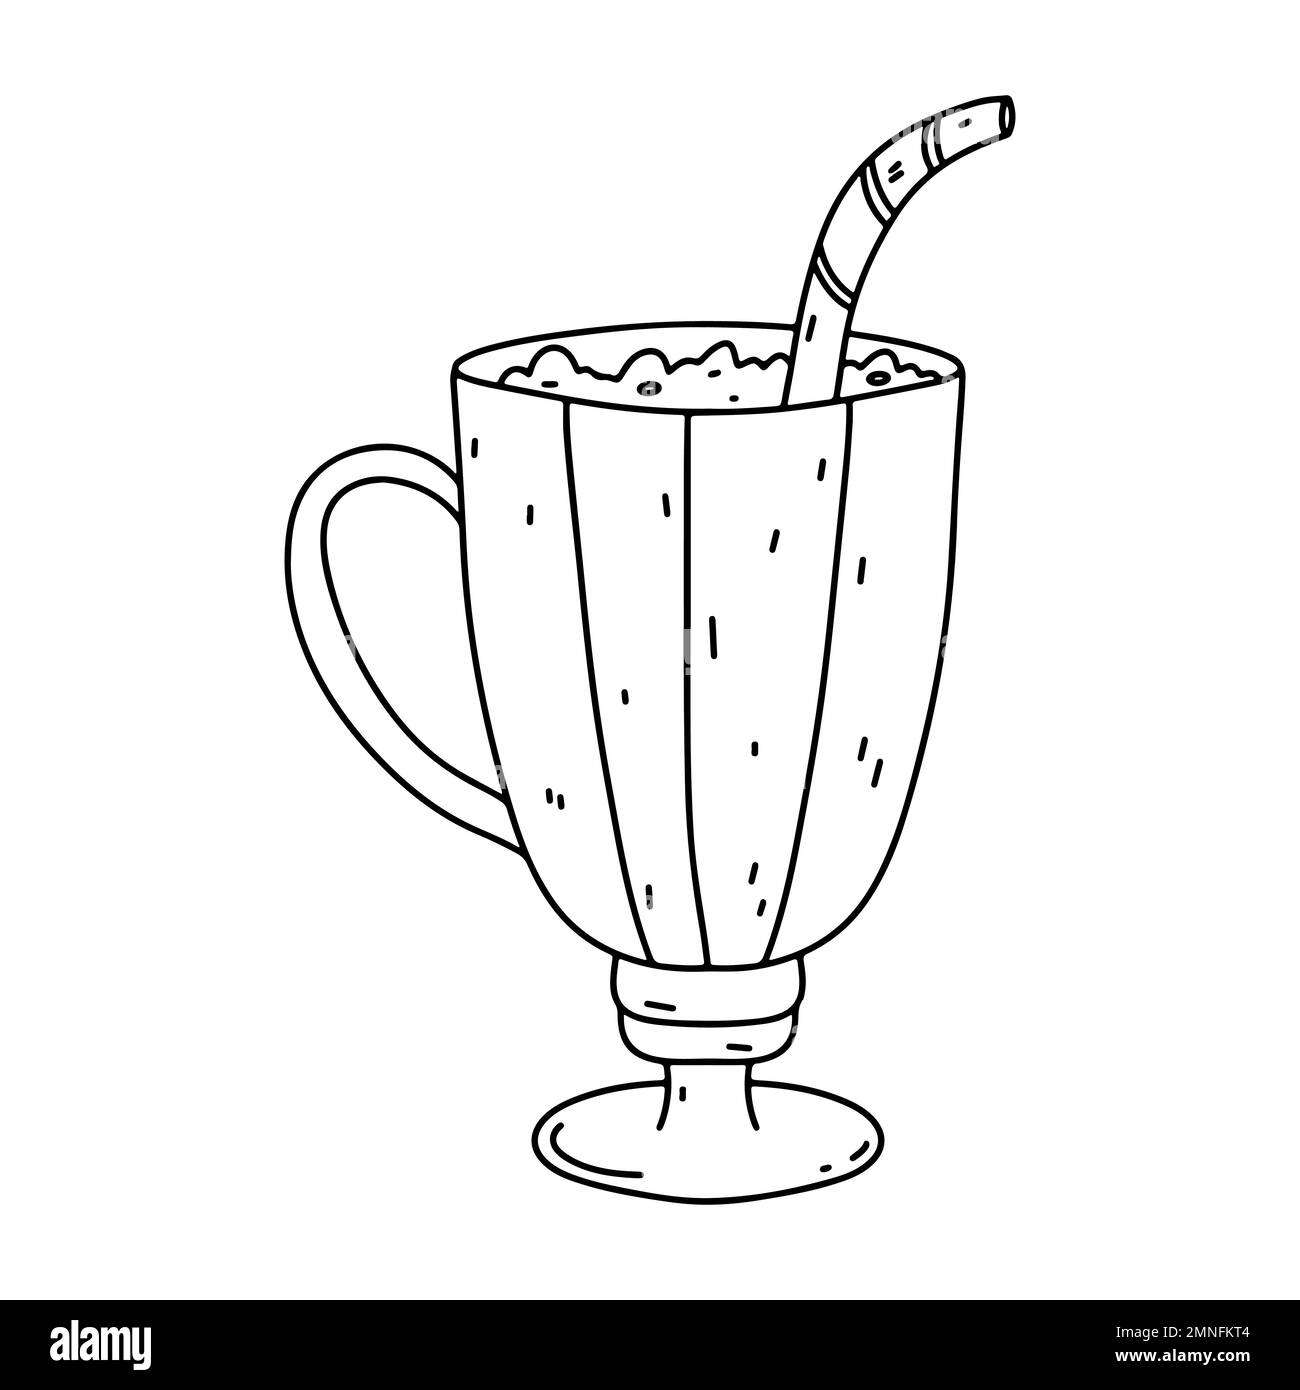 Cocktail in stile doodle. Grazioso bicchiere di bevanda dolce disegnato a mano. Illustrazione disegnata a mano con vettore isolata su sfondo bianco Illustrazione Vettoriale